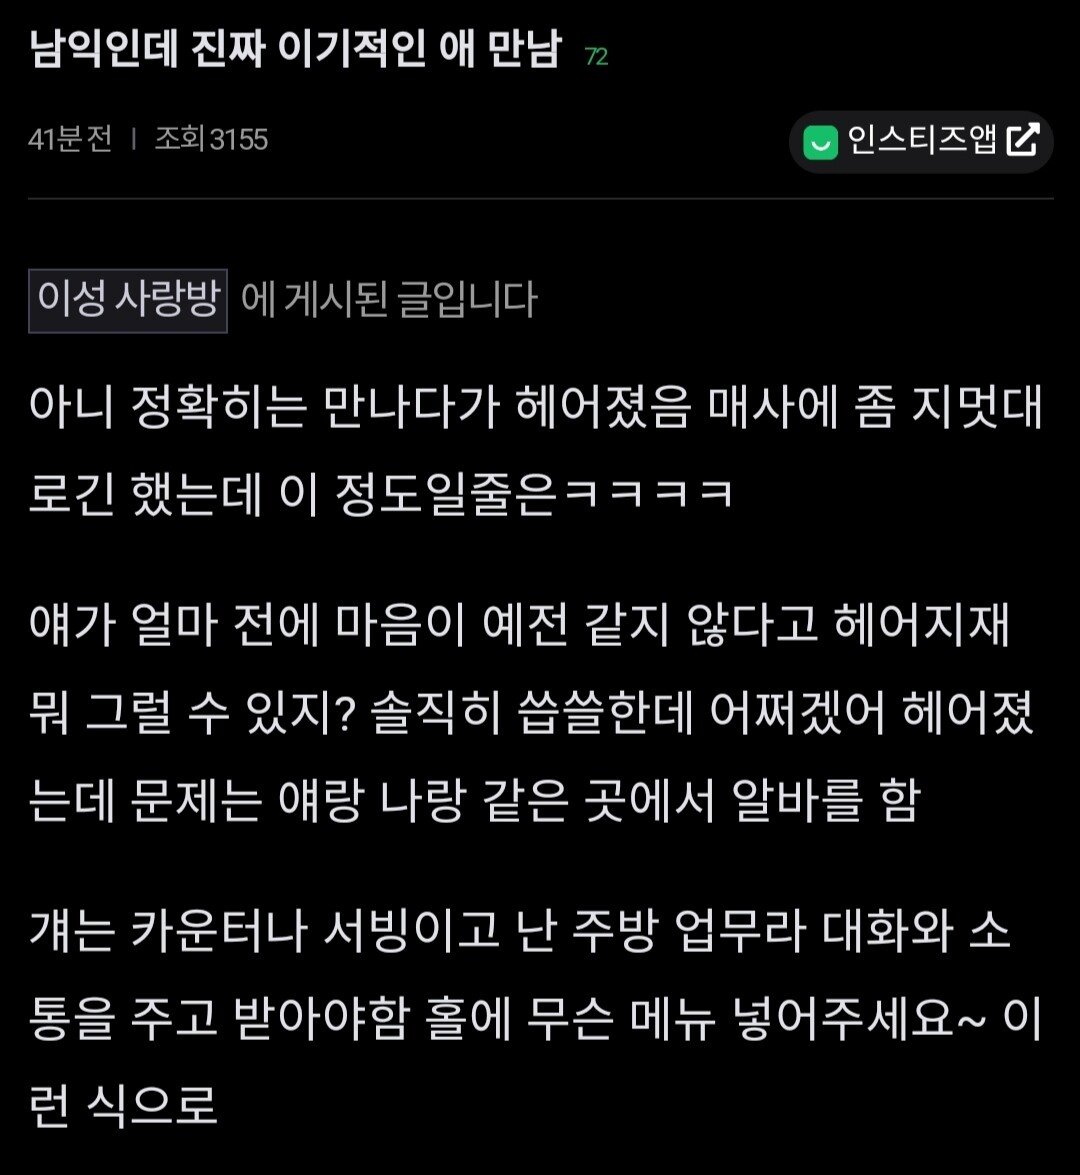 ""겁나 이기적인 여자애랑 헤어짐"".jpg